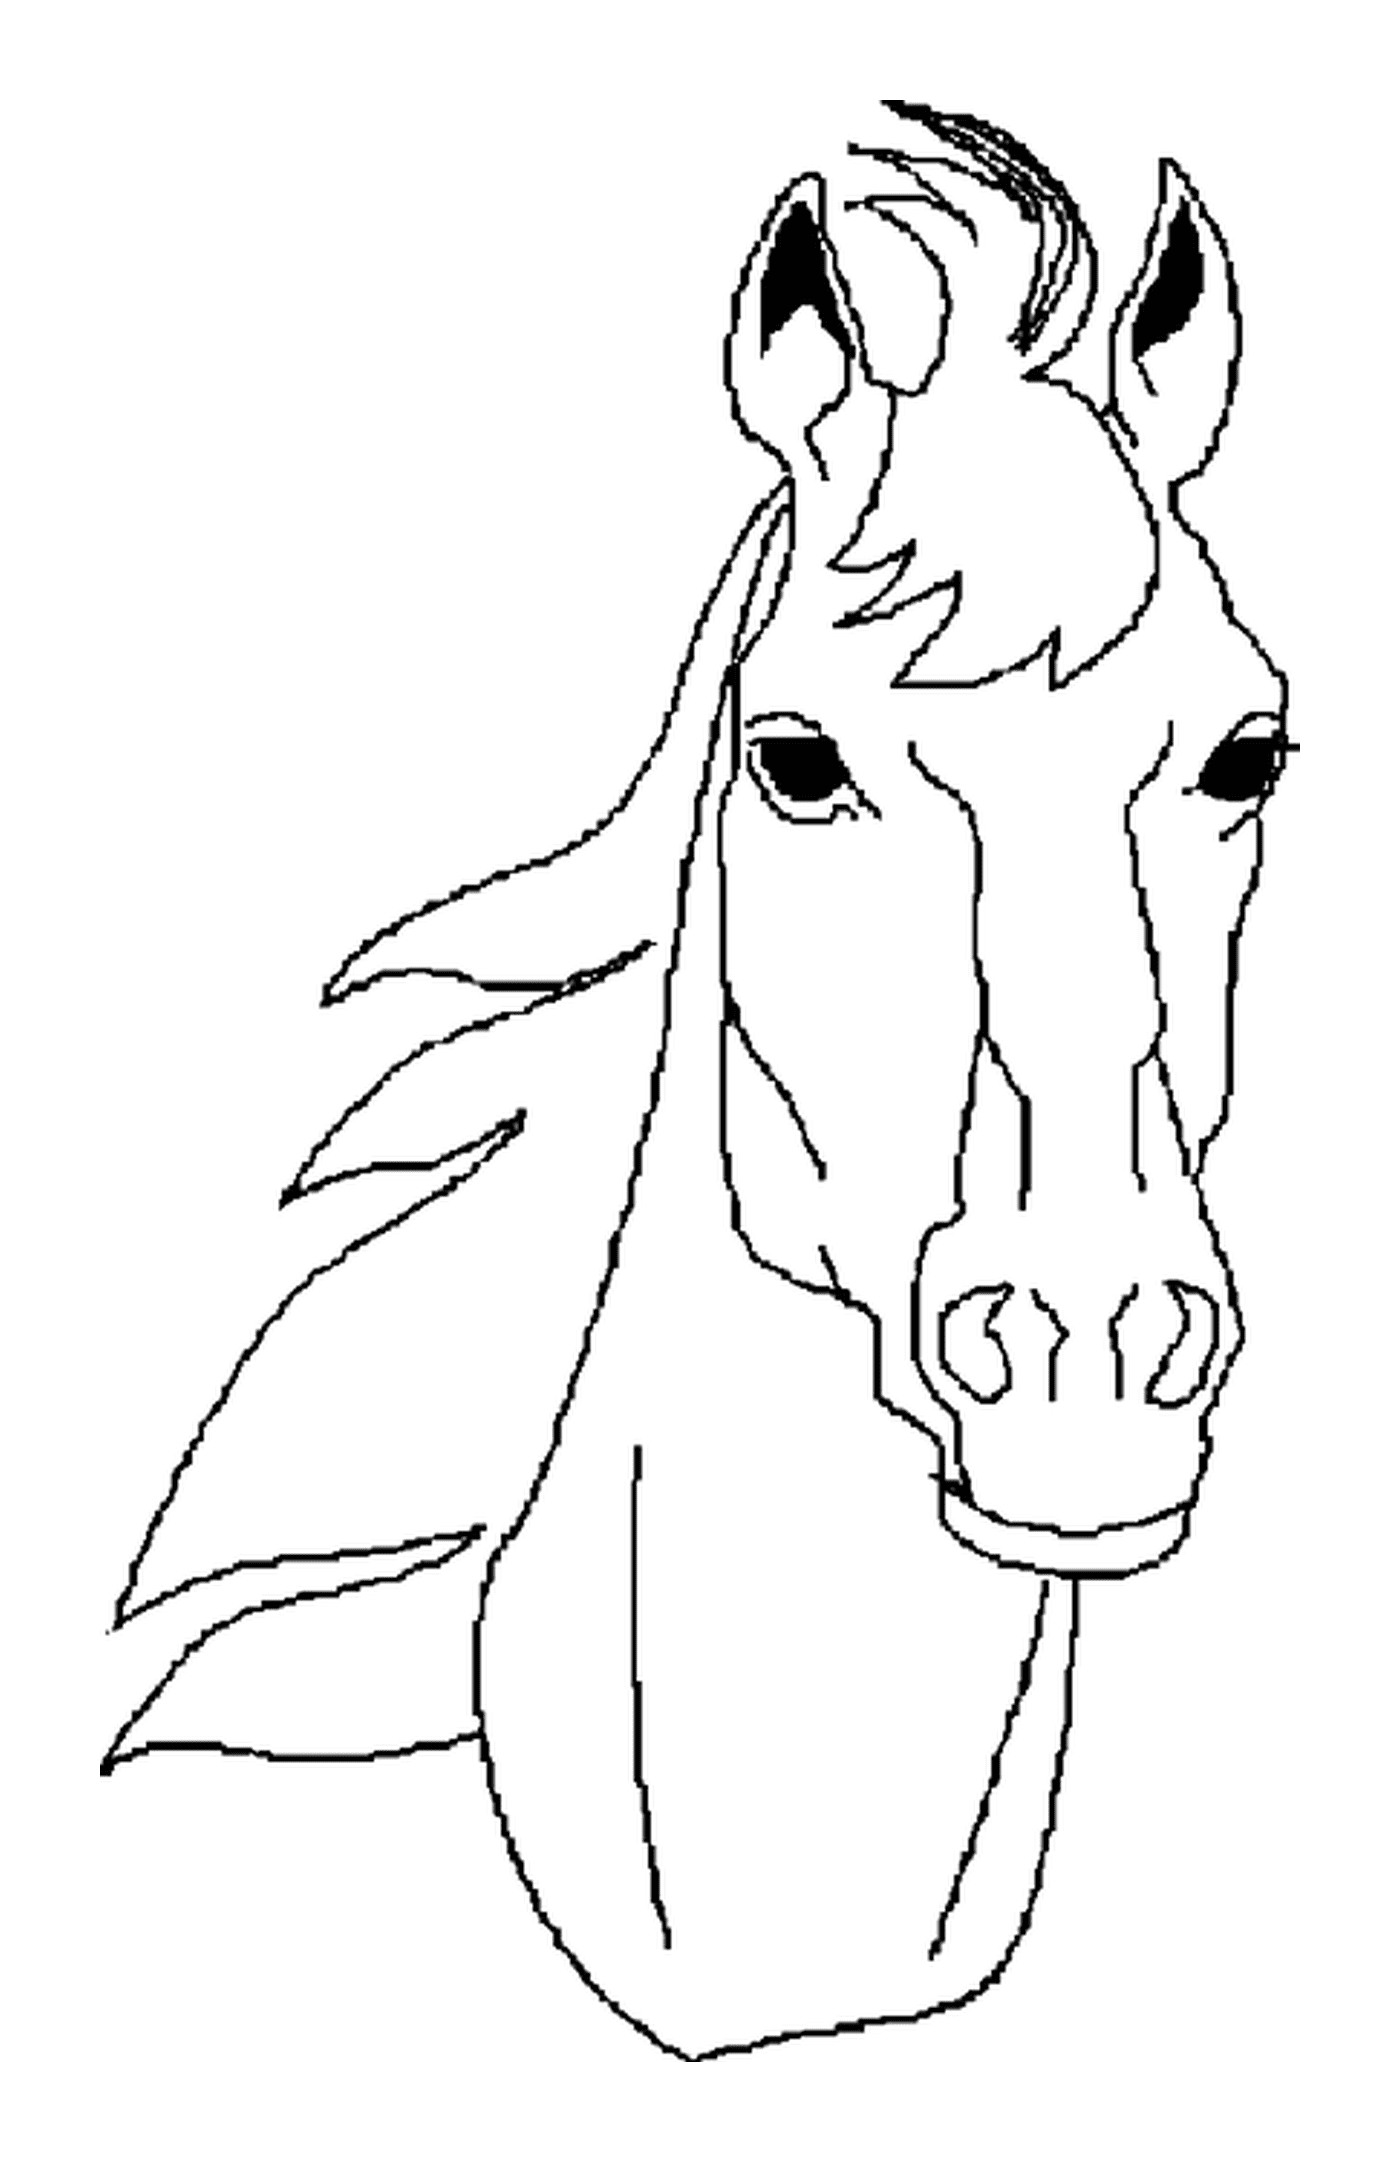  Портрет головы лошади 